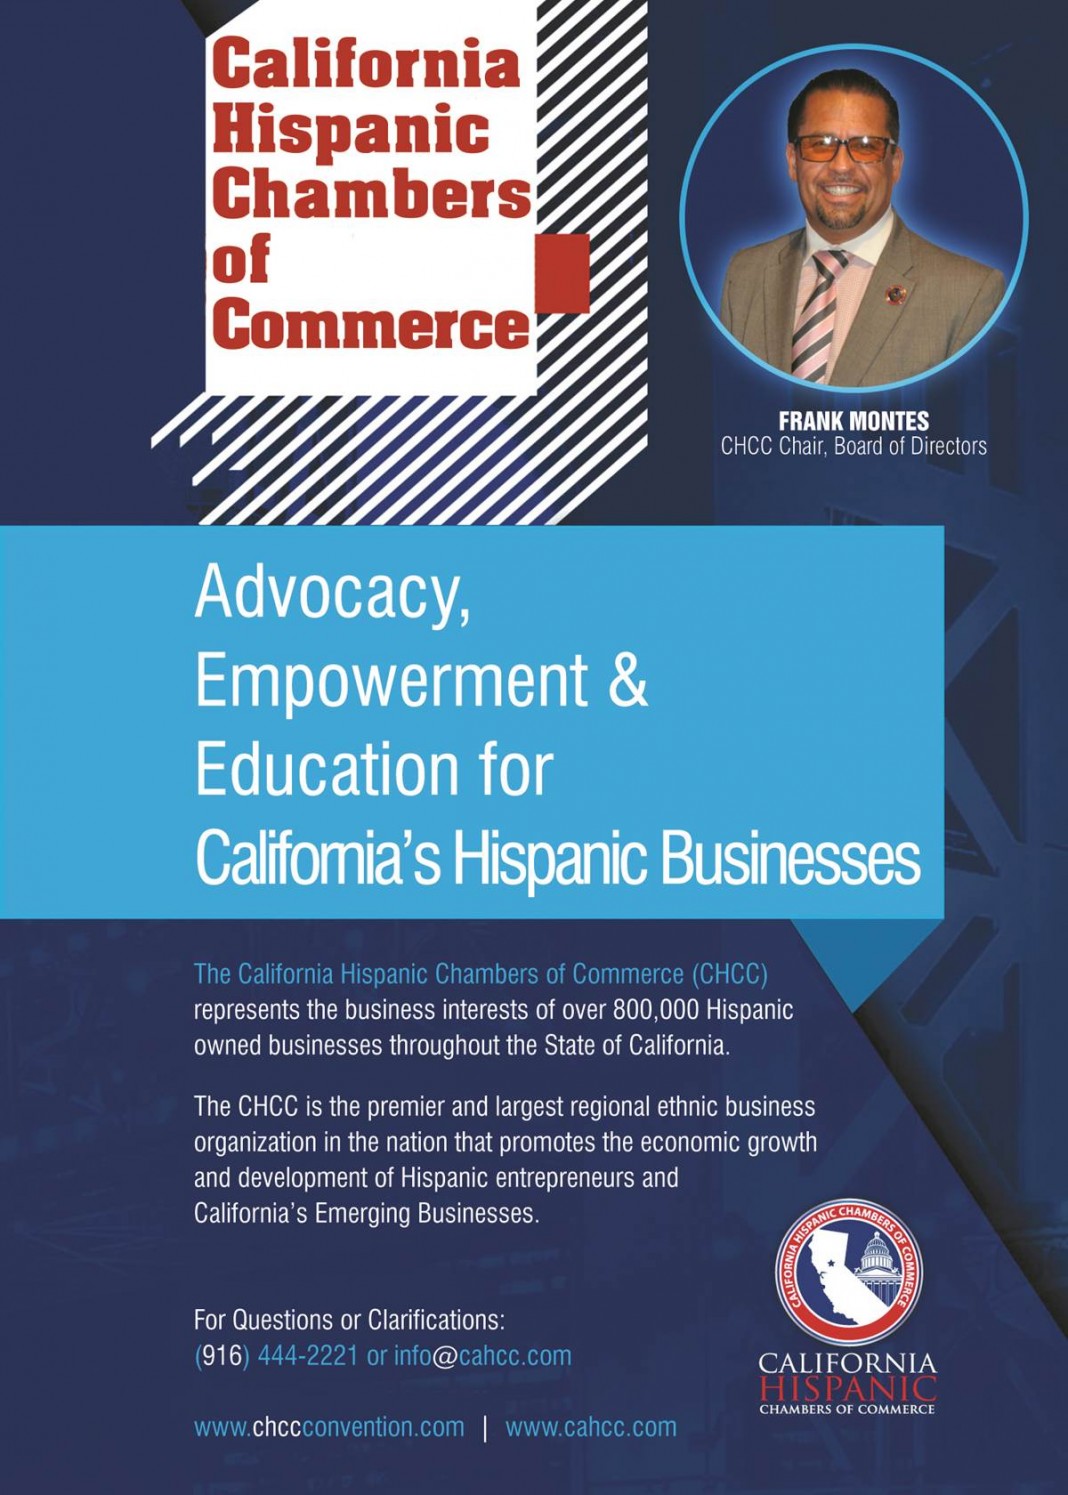 California Hispanic Chambers of Commerce (CHCC)